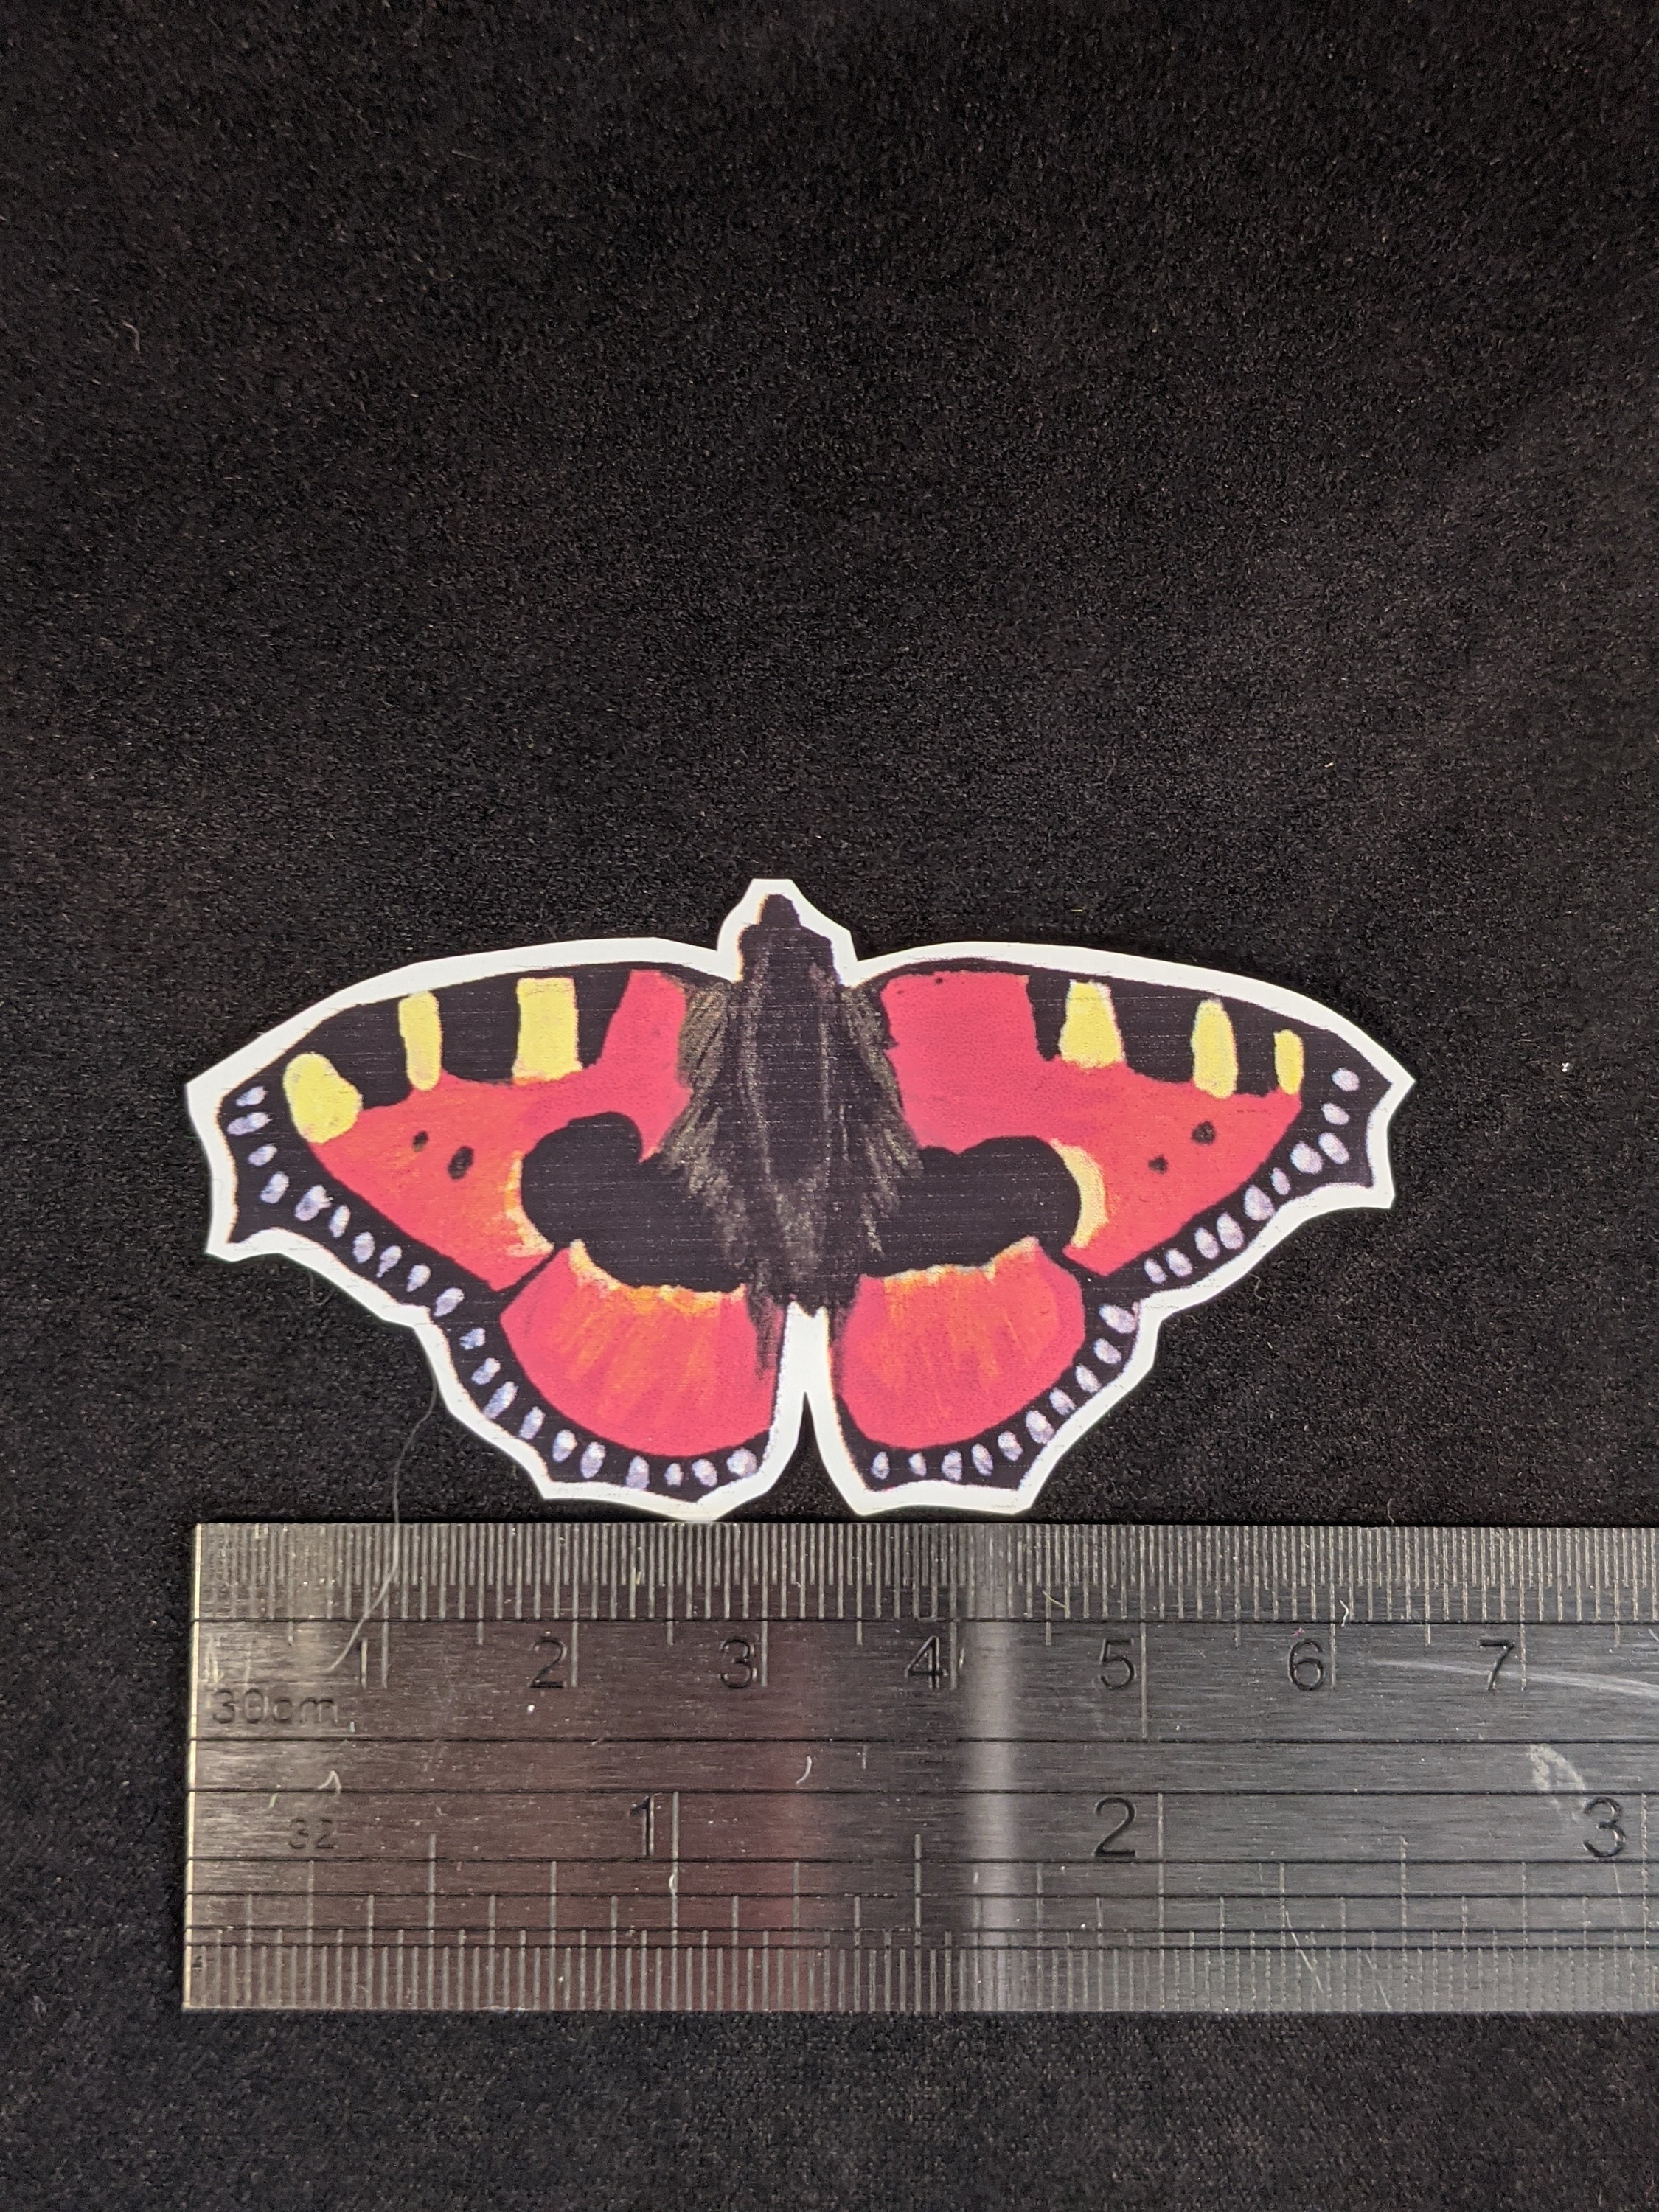 Black Vine Butterfly Vinyl Sticker, Butterfly Stickers, Best Friend Gift,  Laptop Sticker, Butterfly Decals 